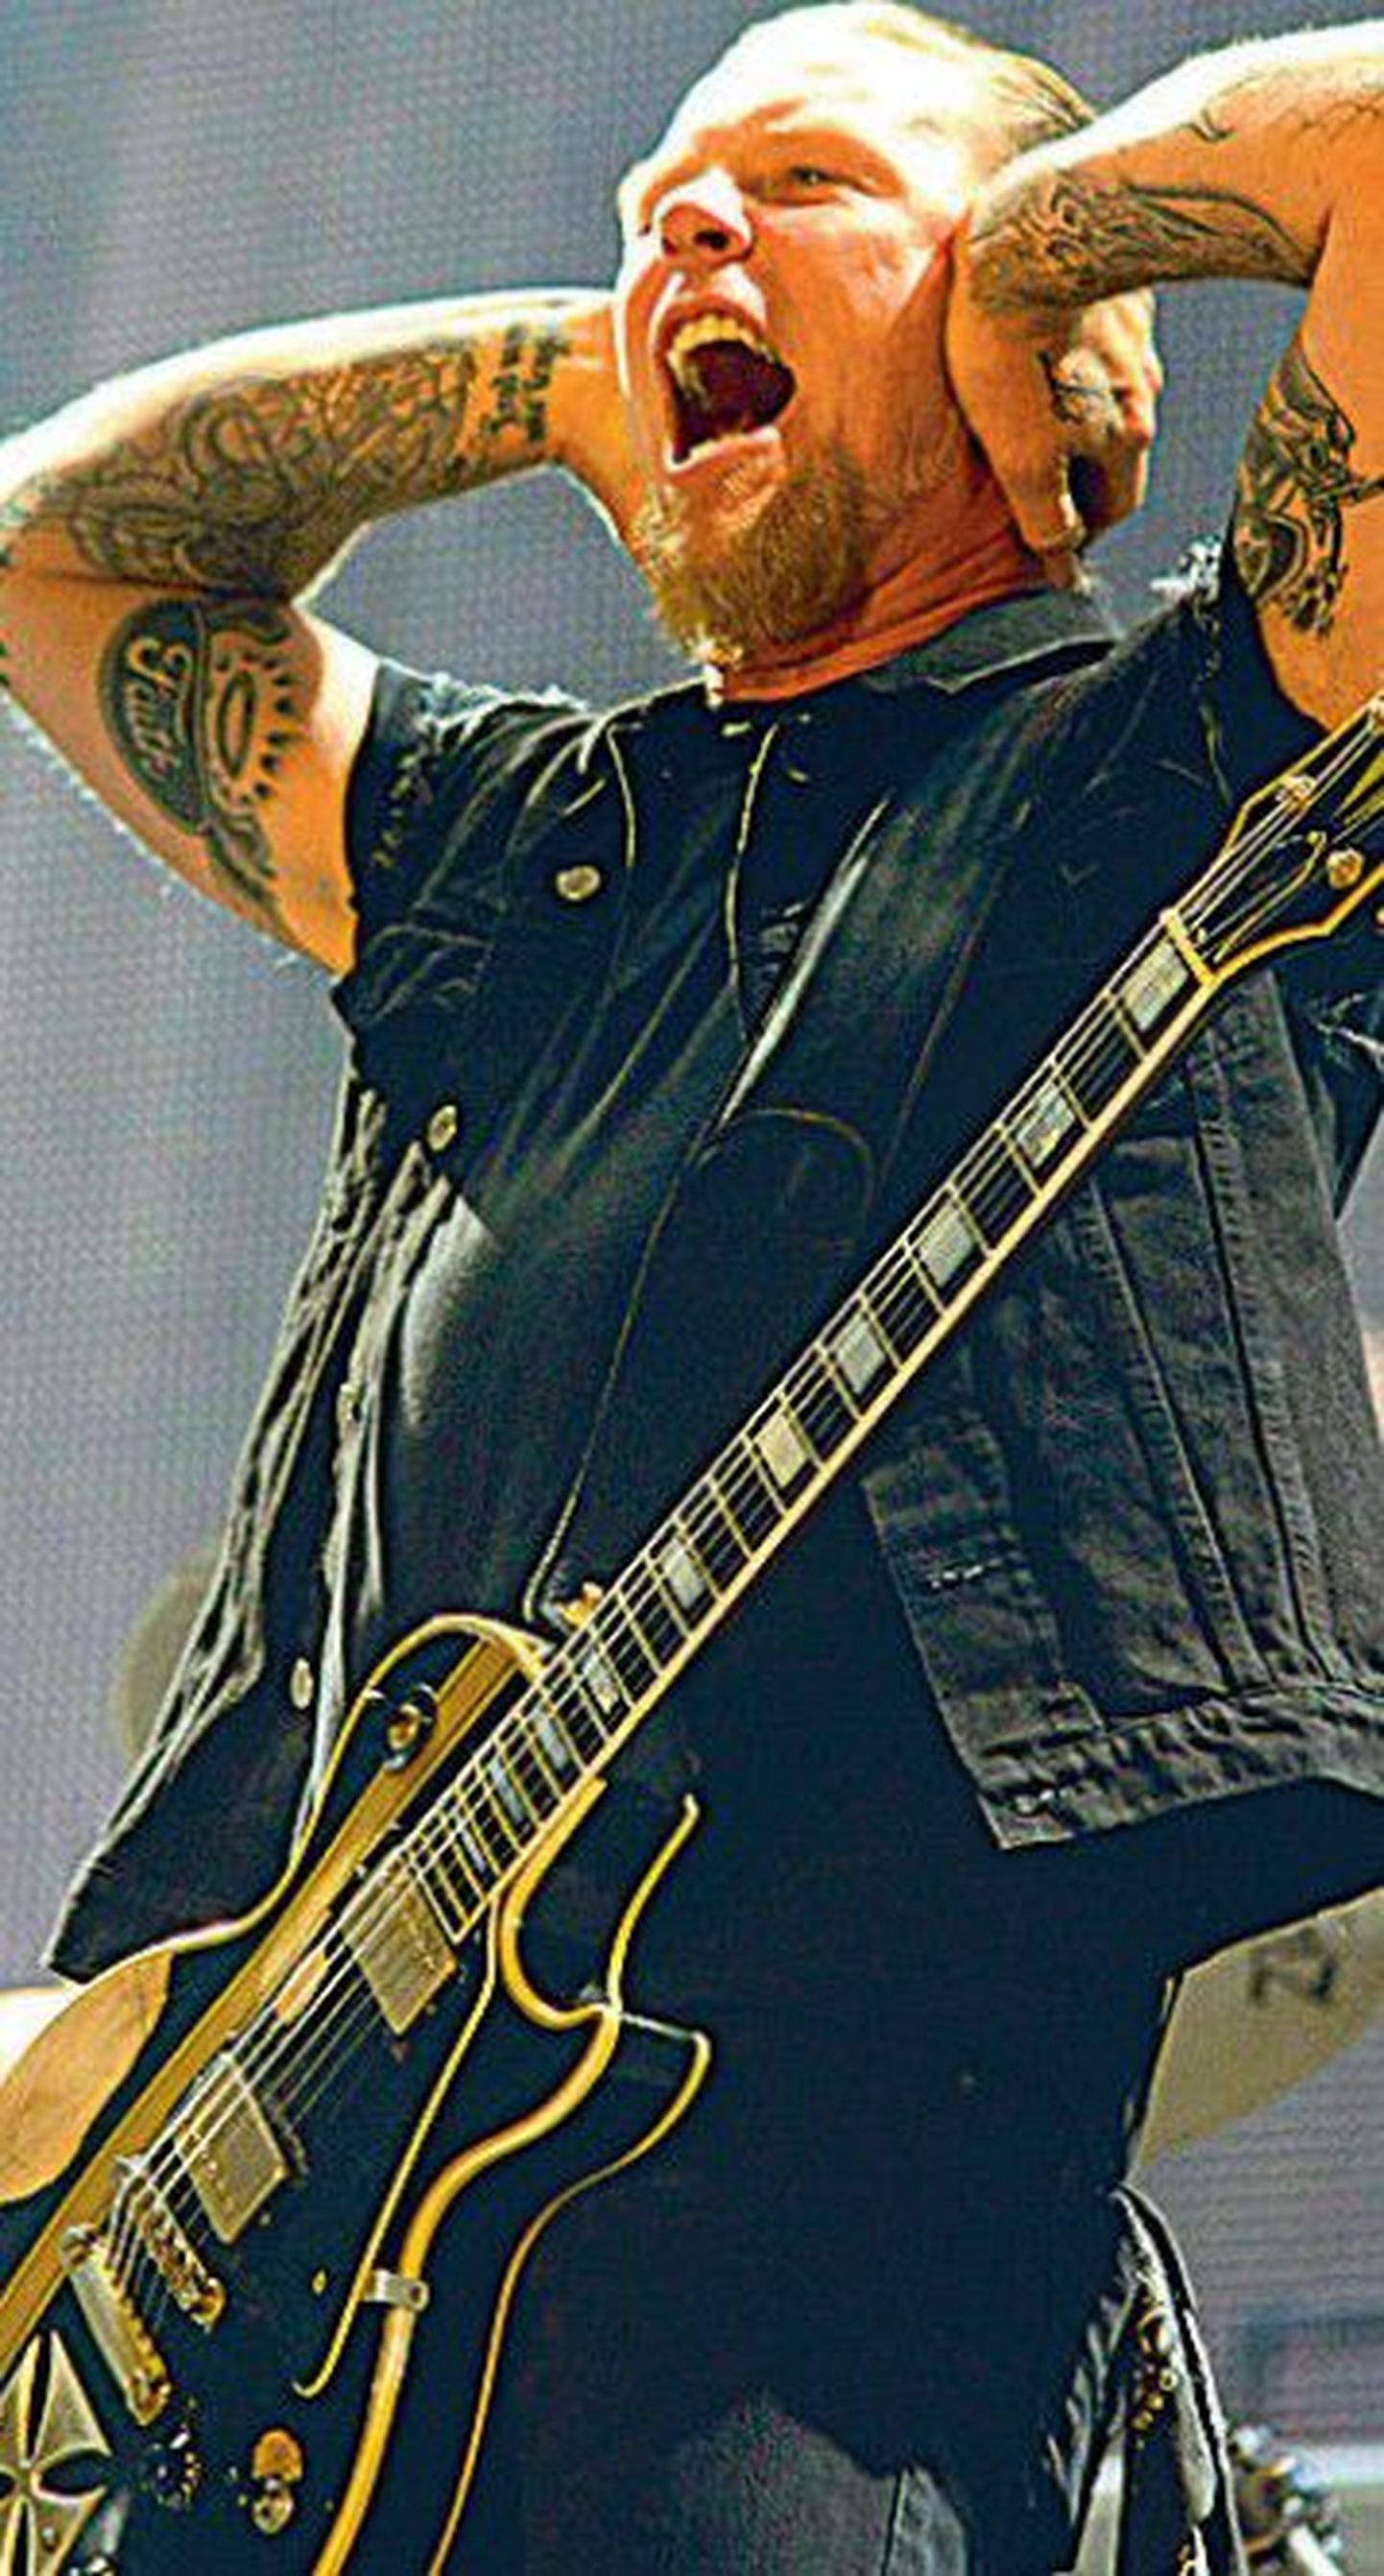 Fännid Metallica solisti James Hetfieldi kombel oma kõrvu nende muusikale ei sulge.